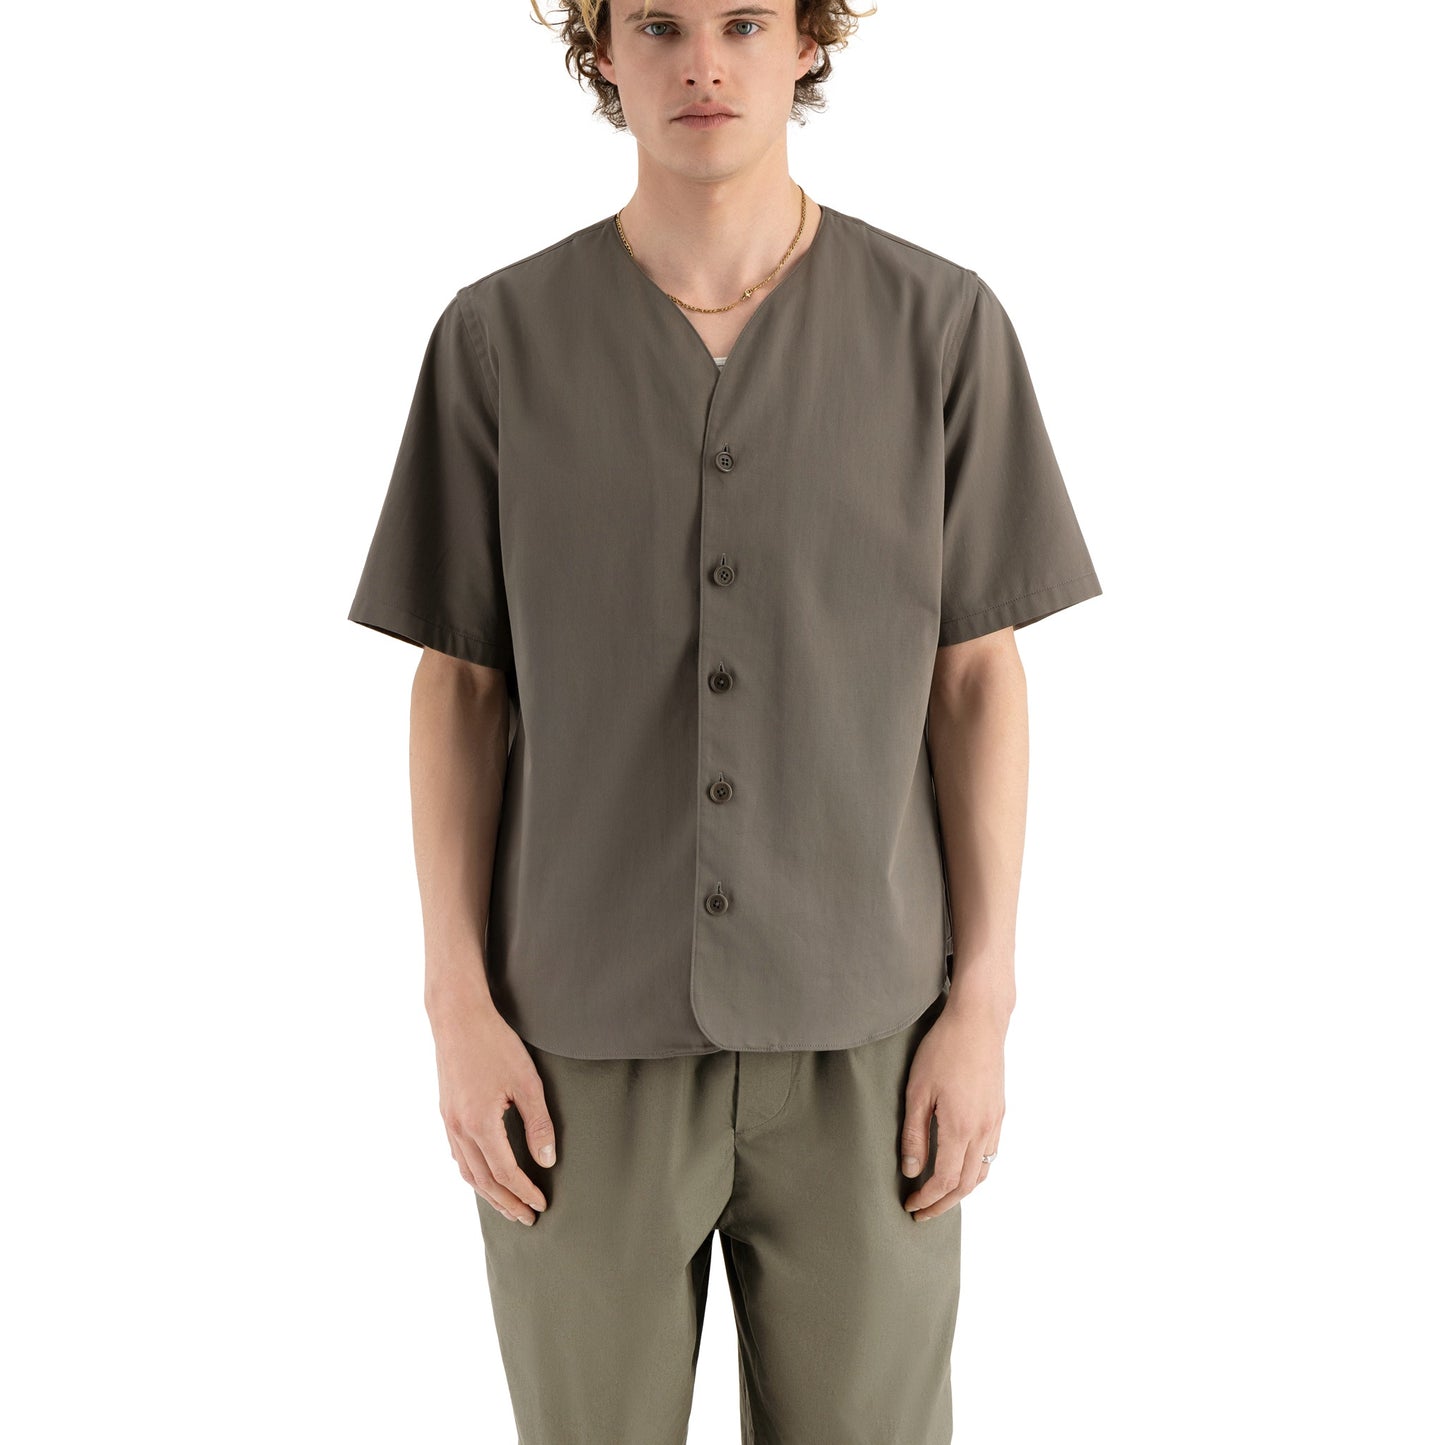 Mike Short Sleeve Cotton Baseball Shirt Weimaraner Grey